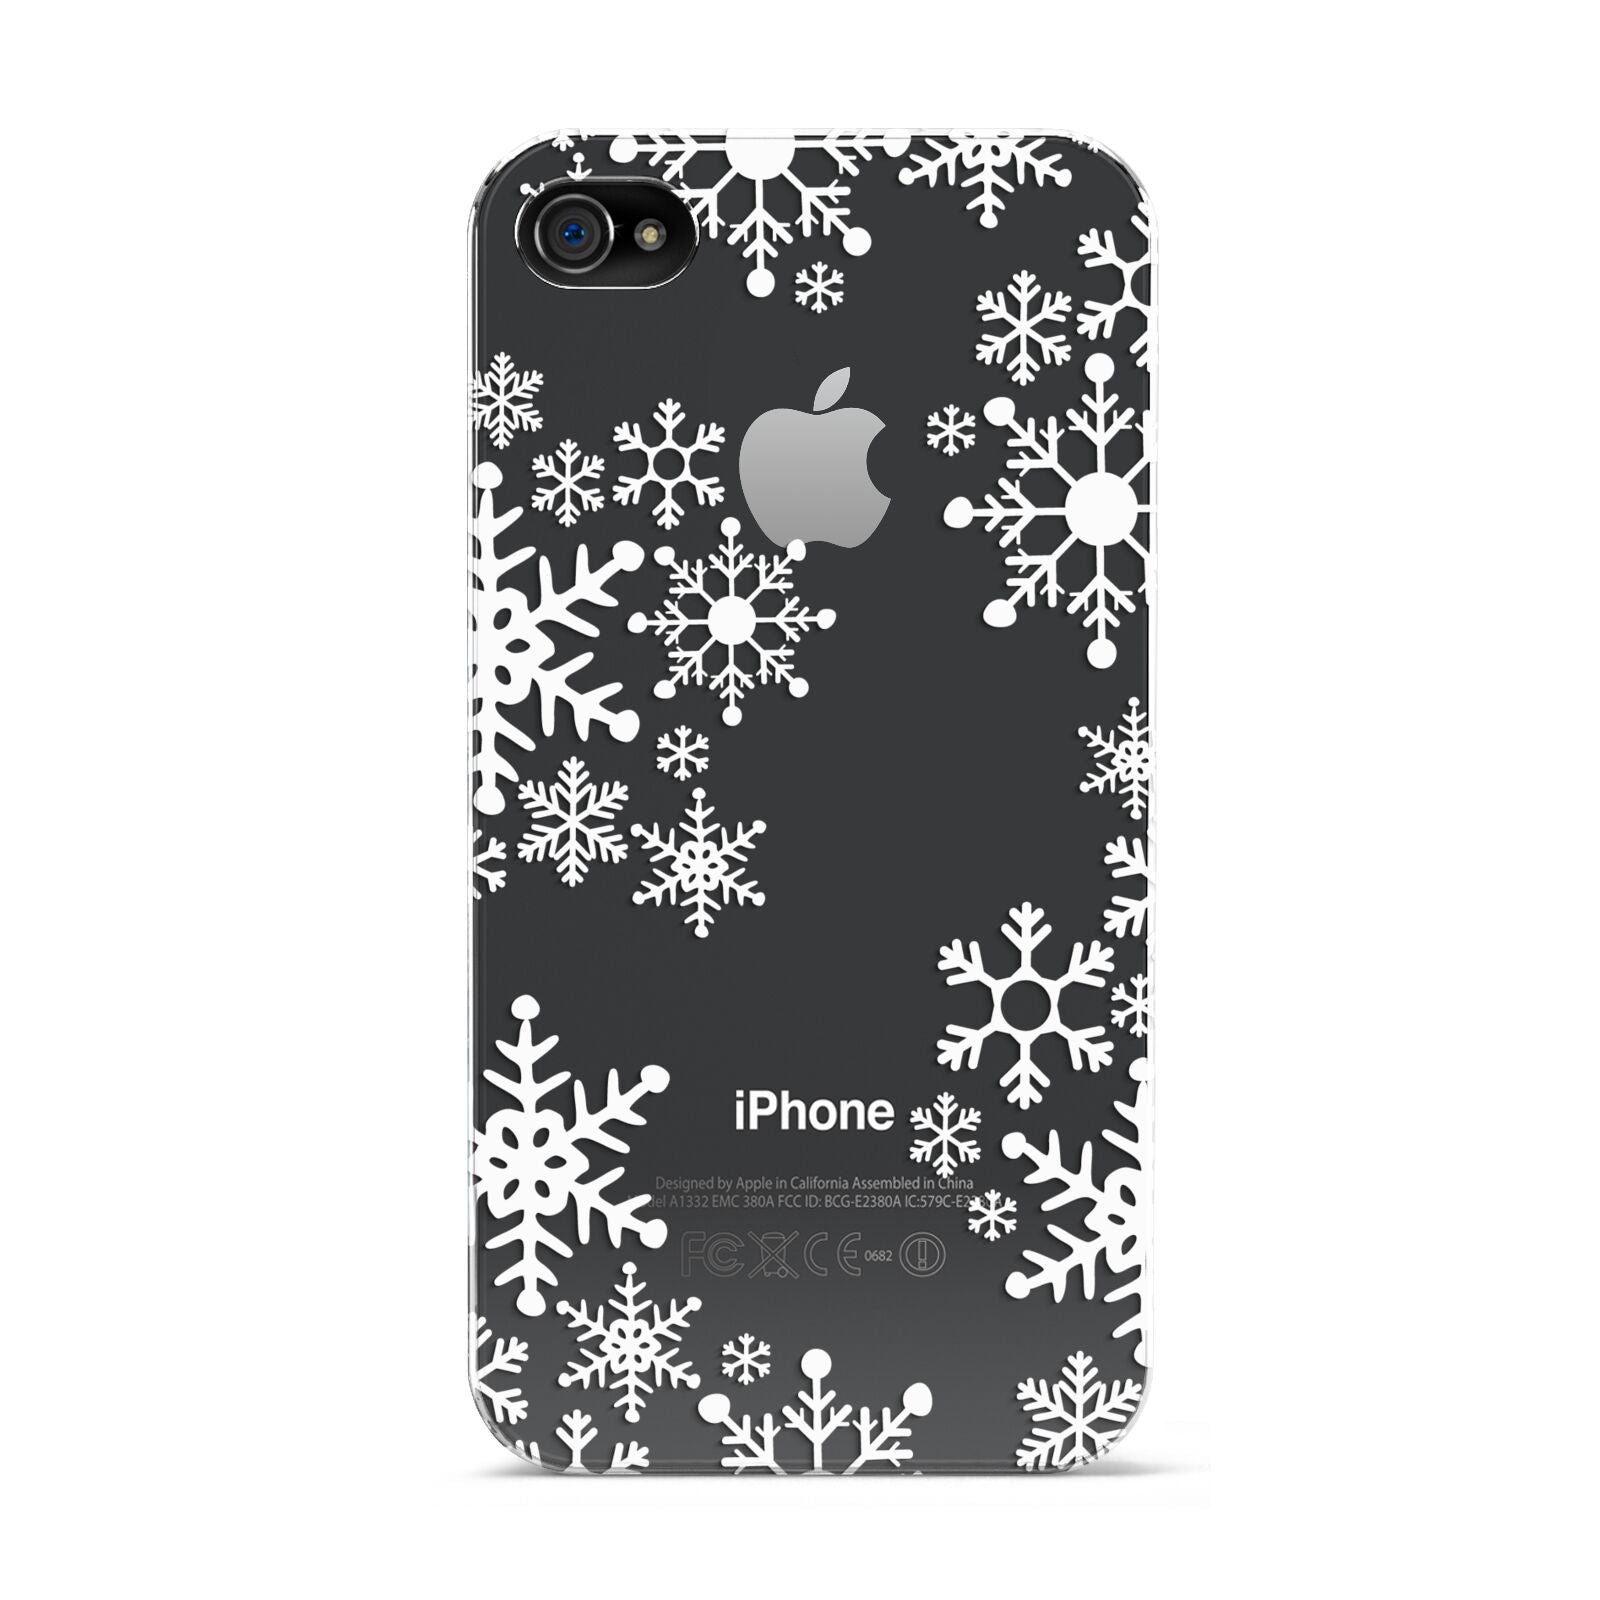 Snowflake Apple iPhone 4s Case